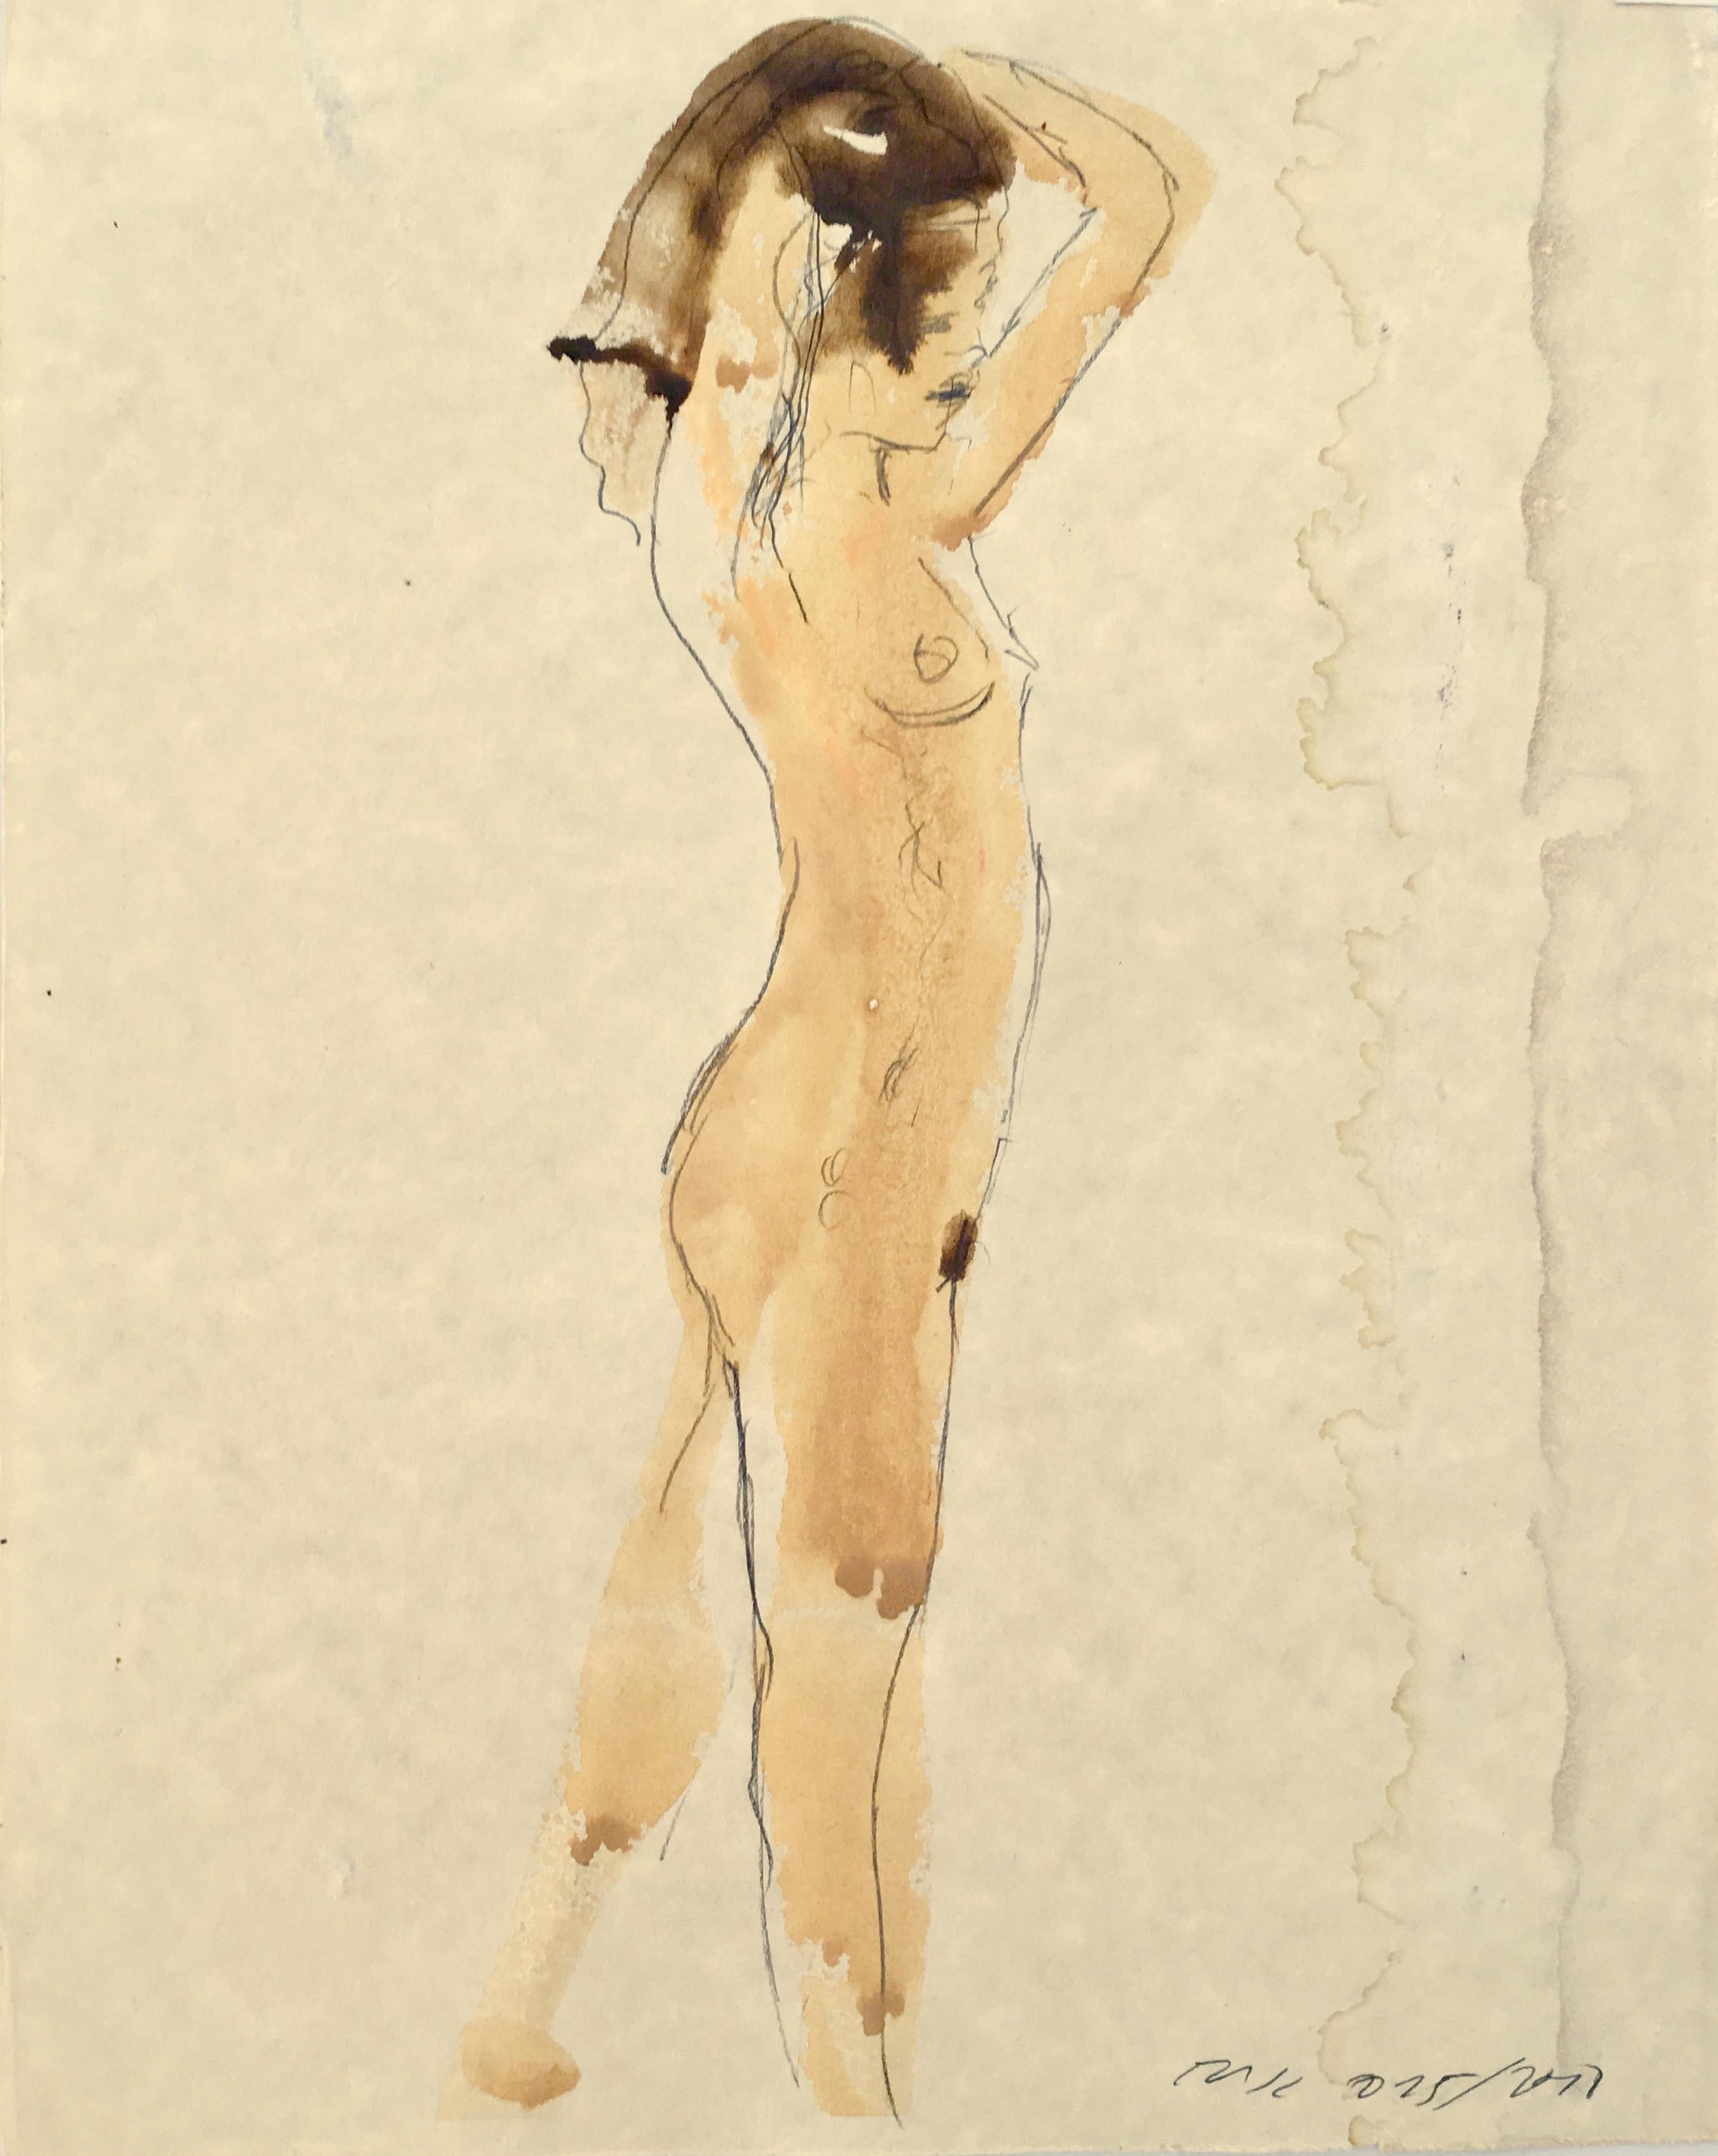 Nude Eduardo Alvarado - Nu féminin debout, aquarelle et graphite sur papier dans des tons terreux sourds